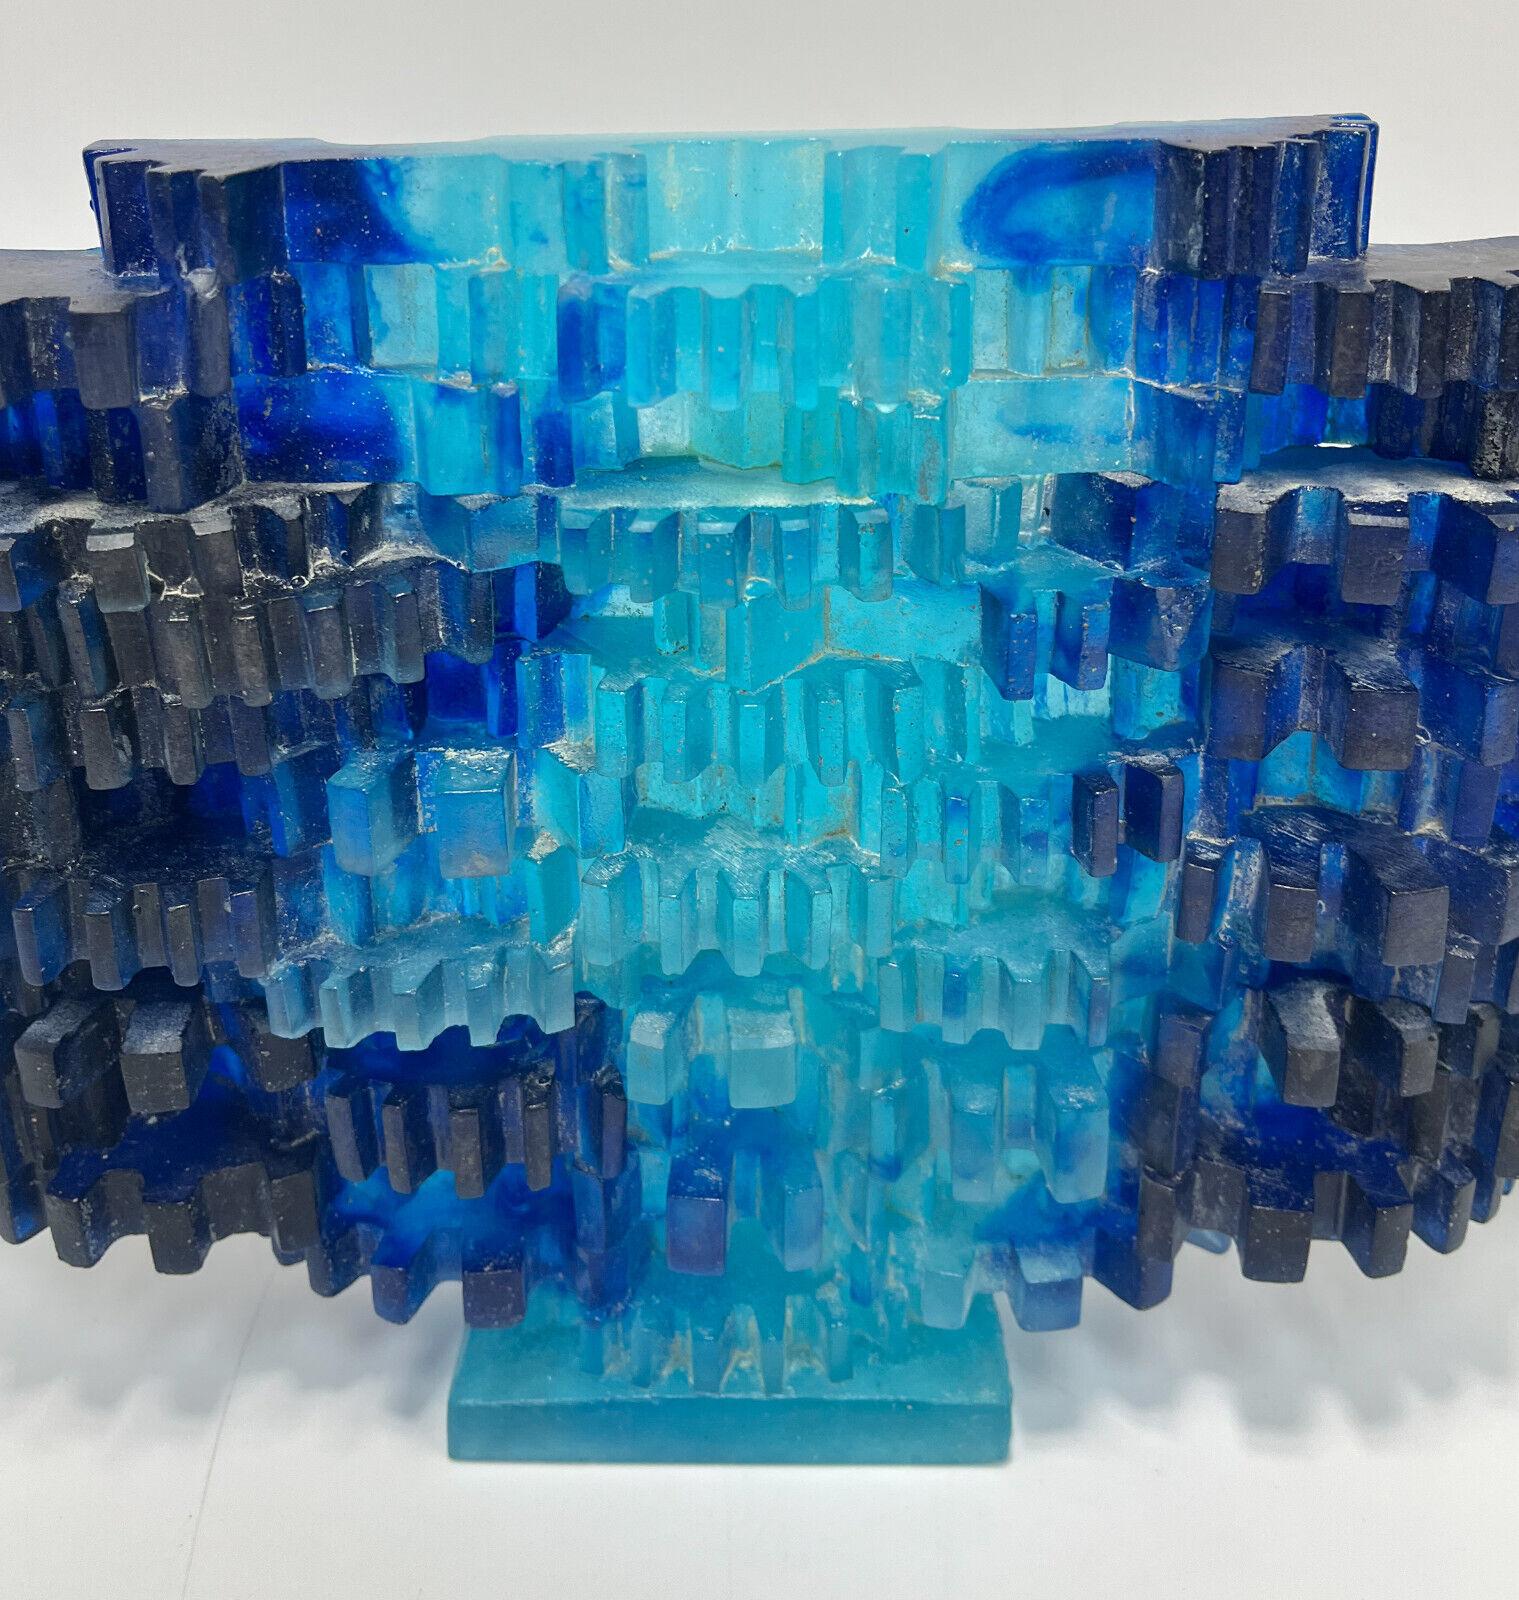 Sculpture abstraite Daum Pate De Vere de Mard de Rosny, édition limitée à 200 exemplaires

Cubes bleus multicolores striés sur toute la surface. Marqué 